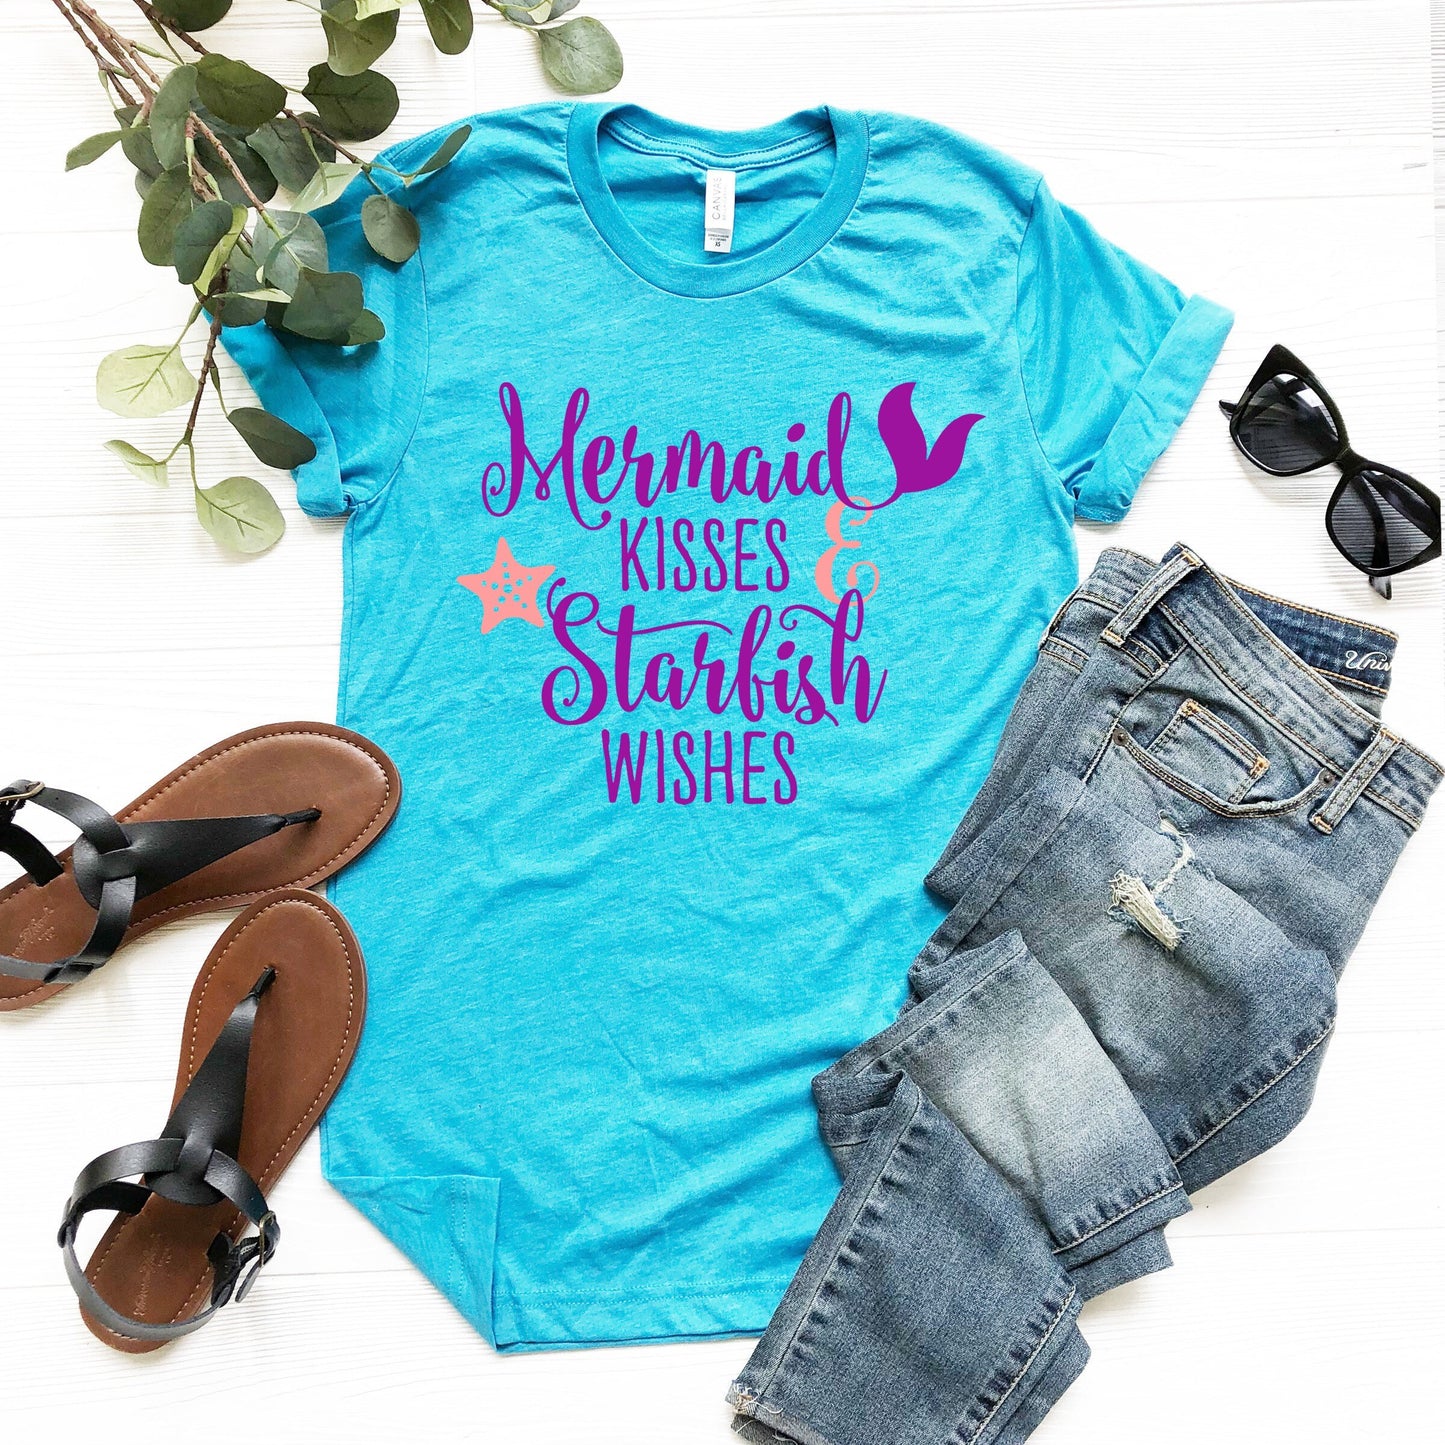 Mermaid Kisses and Starfish Wishes t-shirt - Mermaid Birthday Party Shirt - Mermaid Mom Shirt - Women's Mermaid Shirt - Mermaid Gift